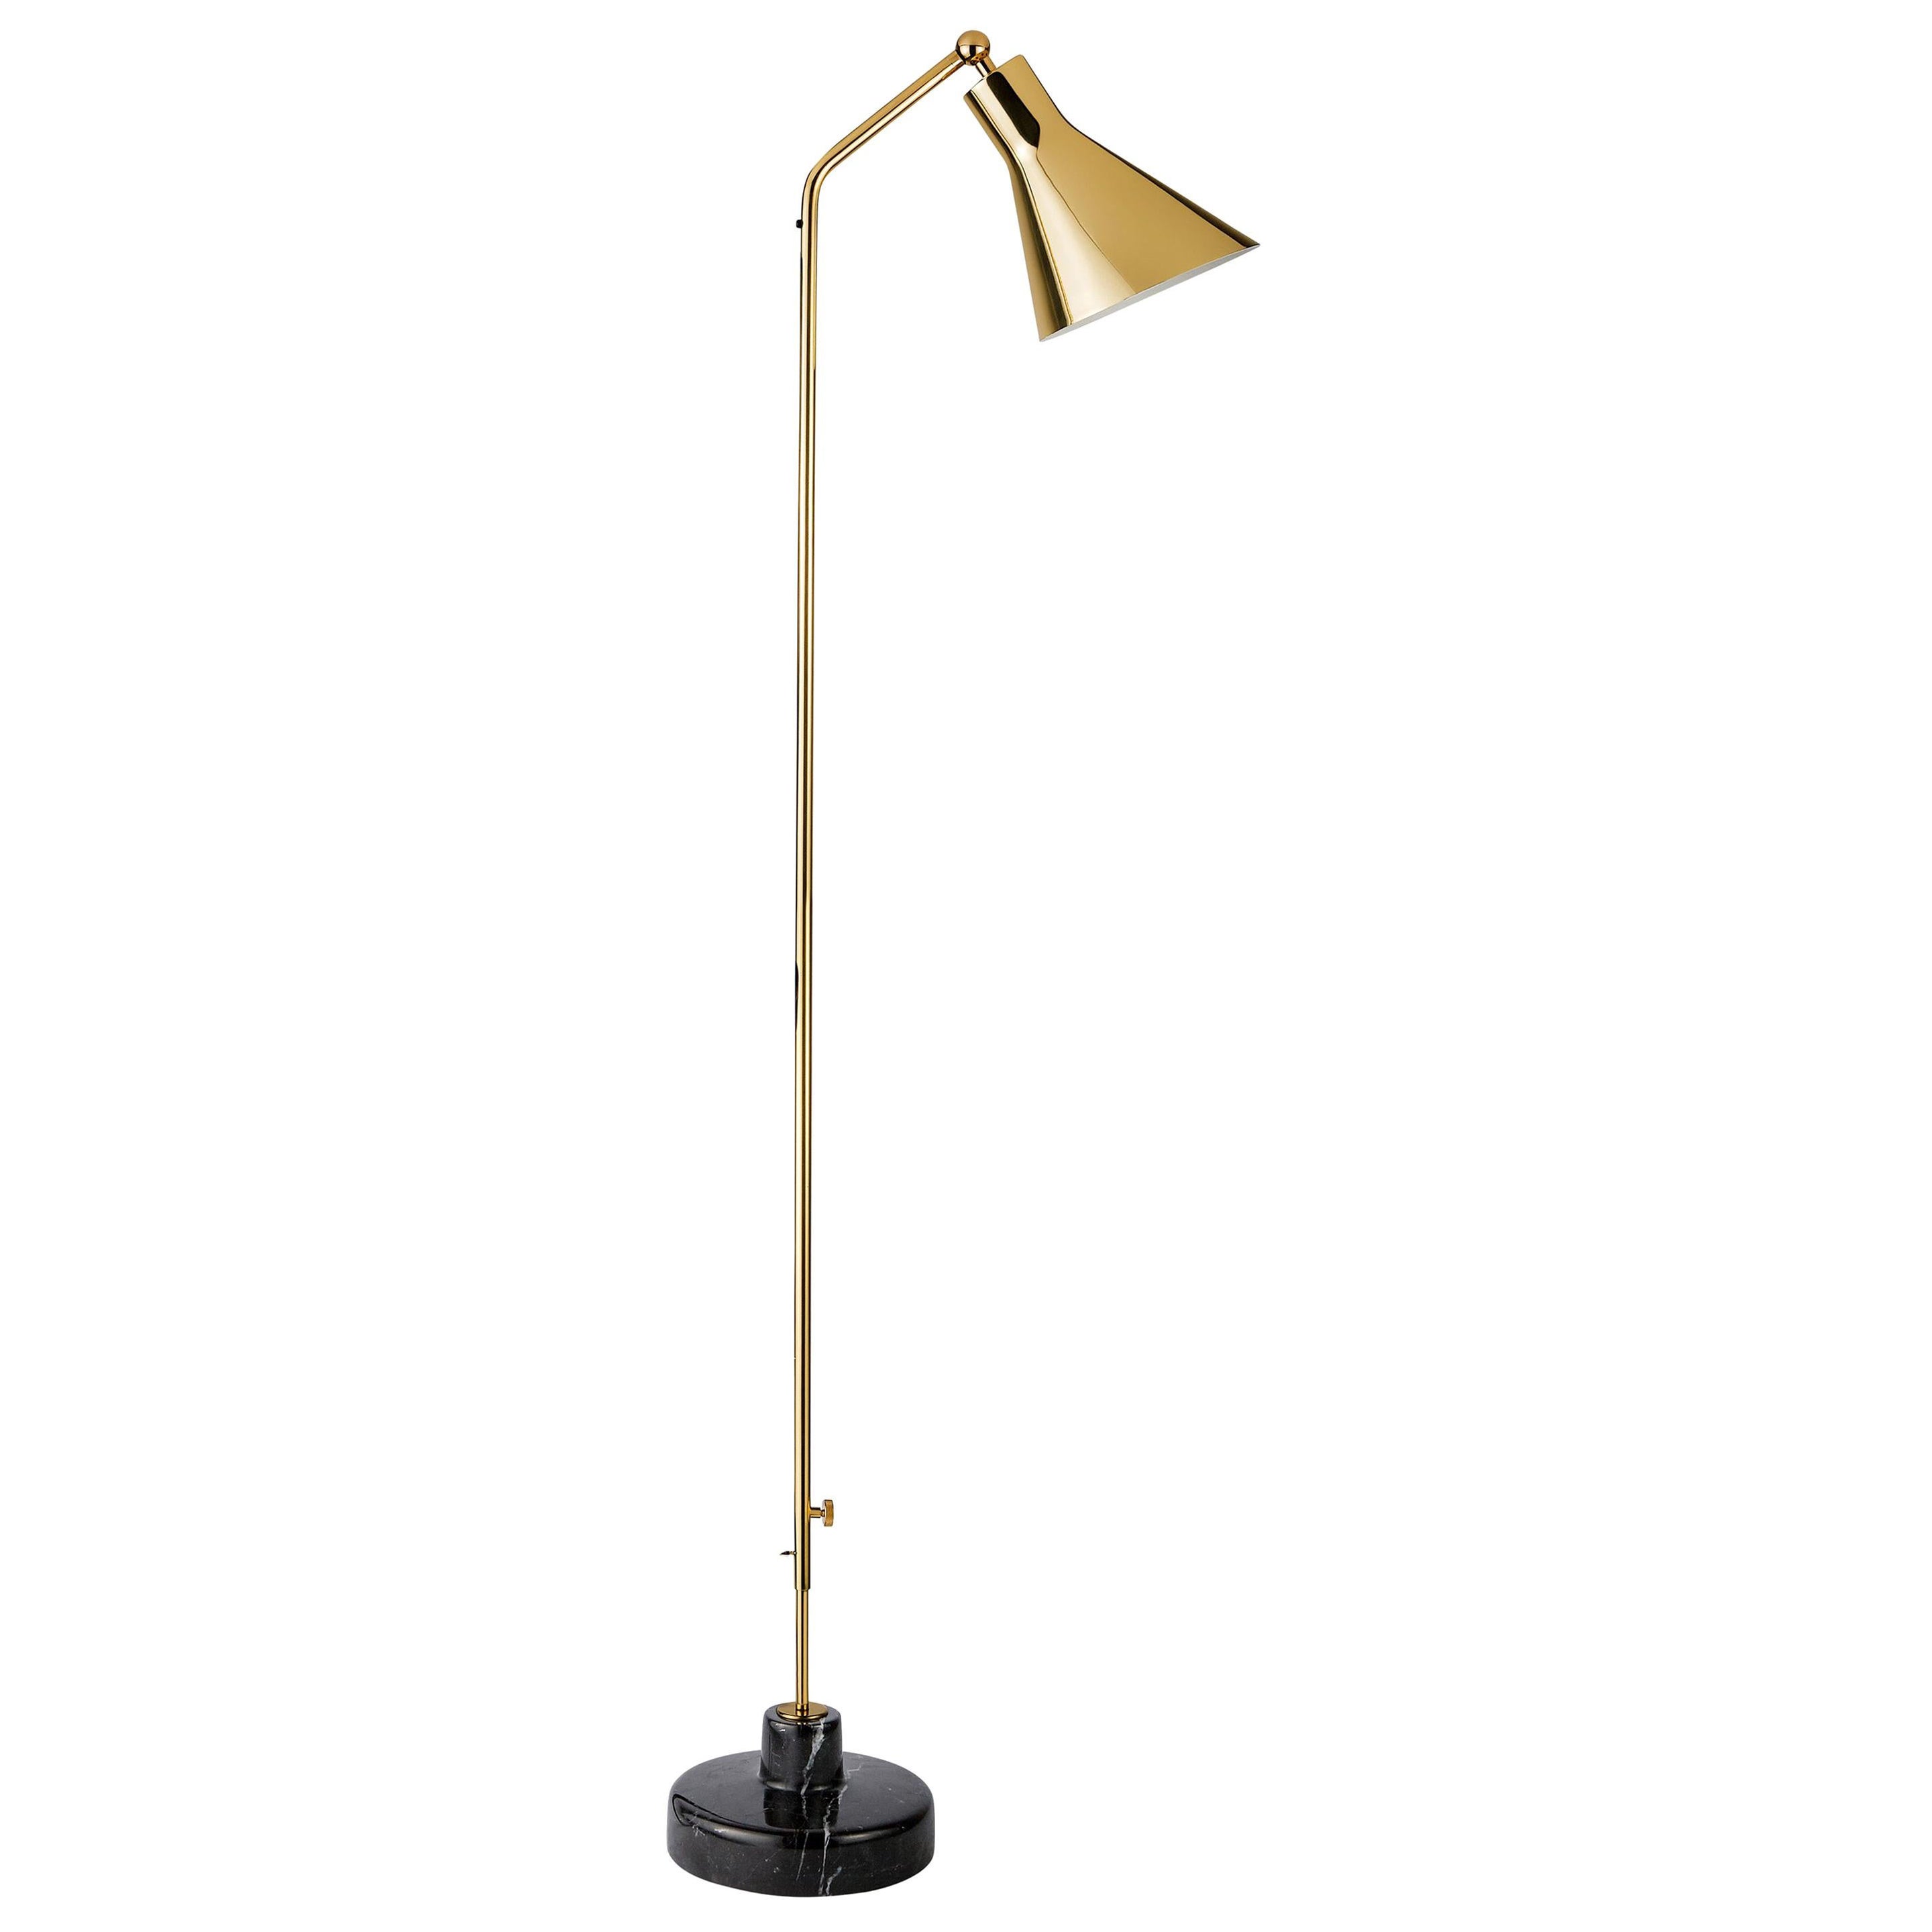 Ignazio Gardella Alzabile Floor Lamp in Brass and Black Marble for Tato Italia For Sale